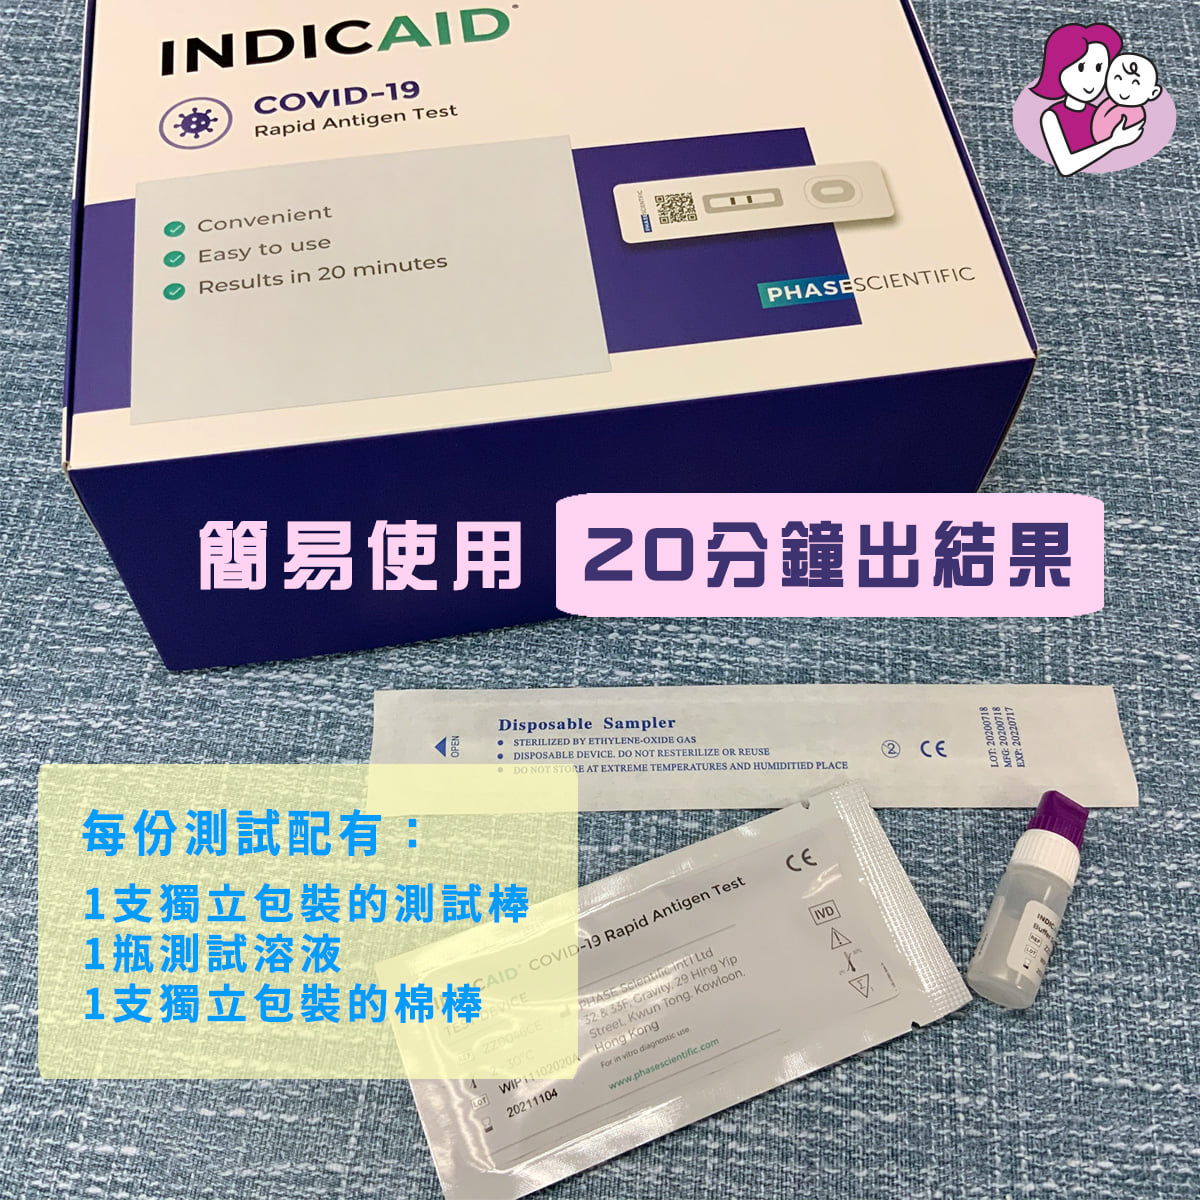 新冠肺炎快速抗原測試試劑盒 INDICAID COVID-19 Rapid Antigen Test